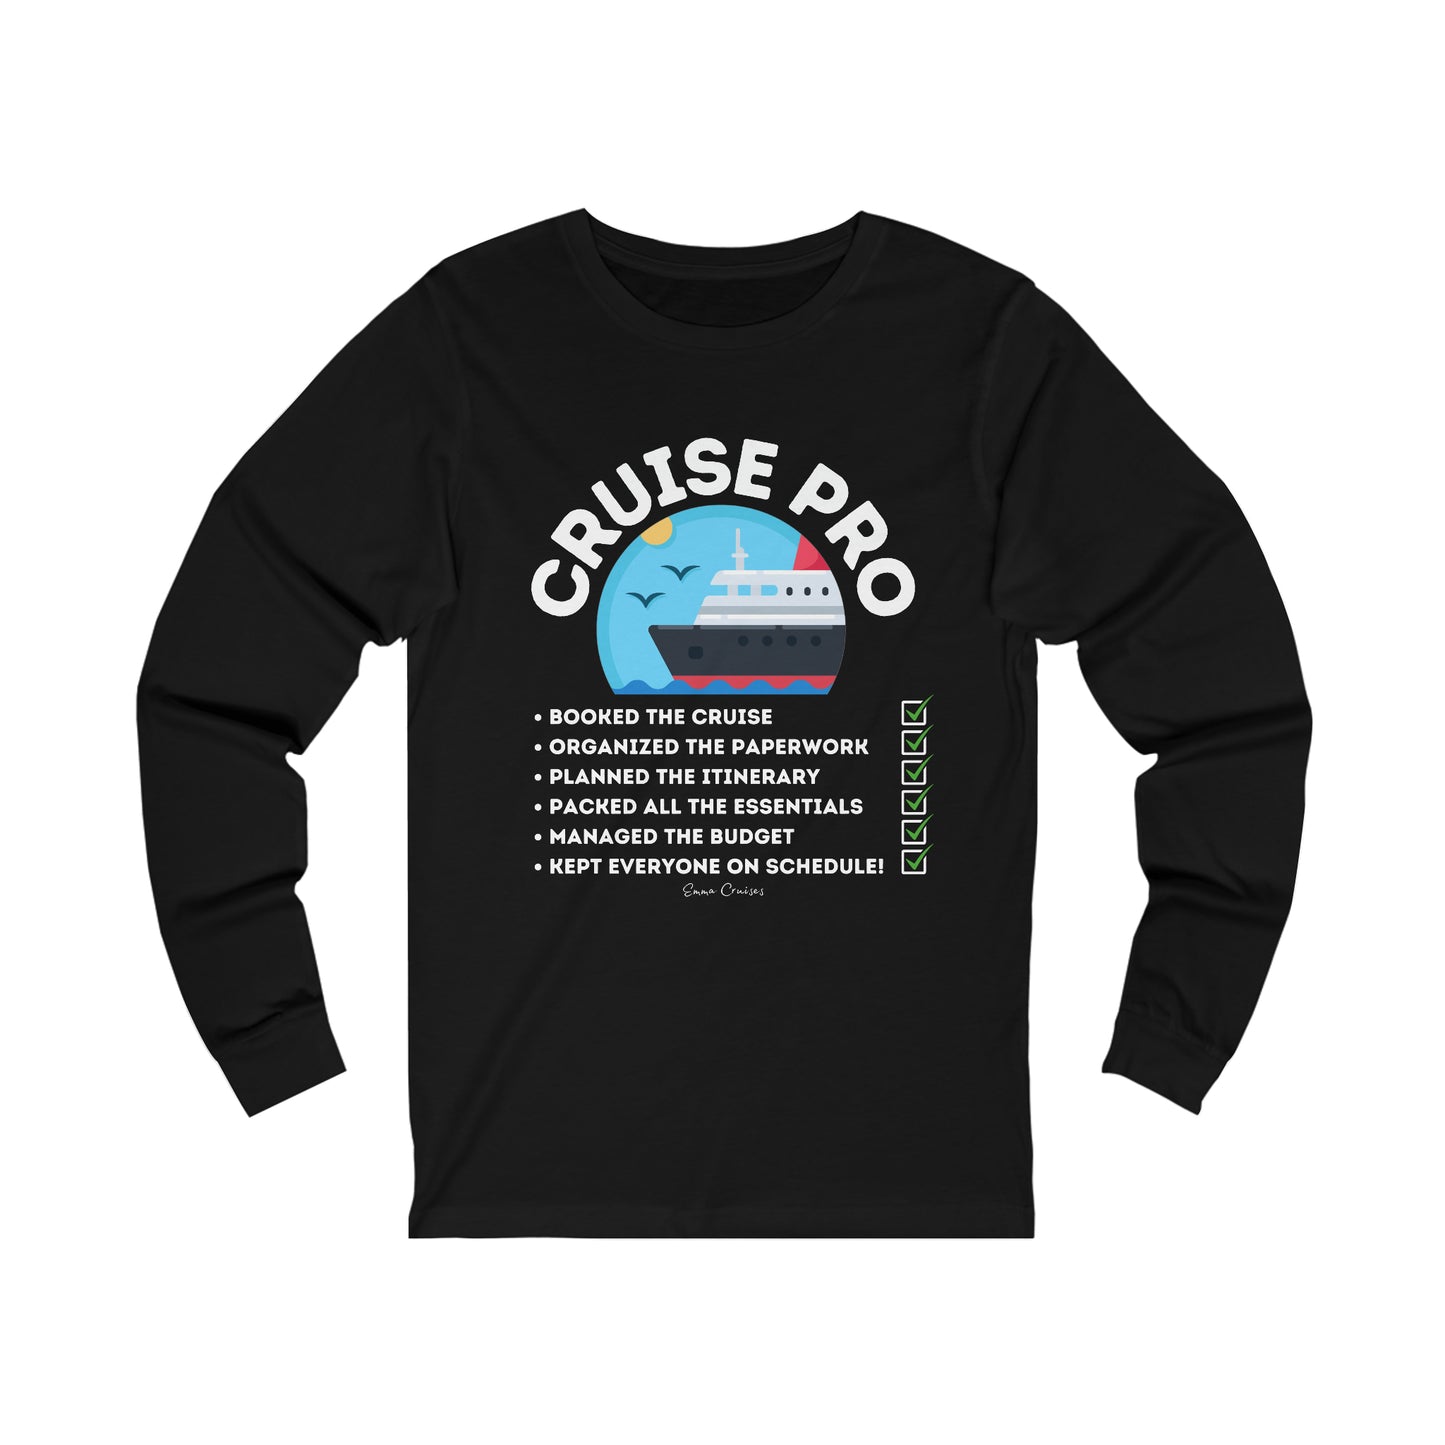 I’m a Cruise Pro - UNISEX T-Shirt